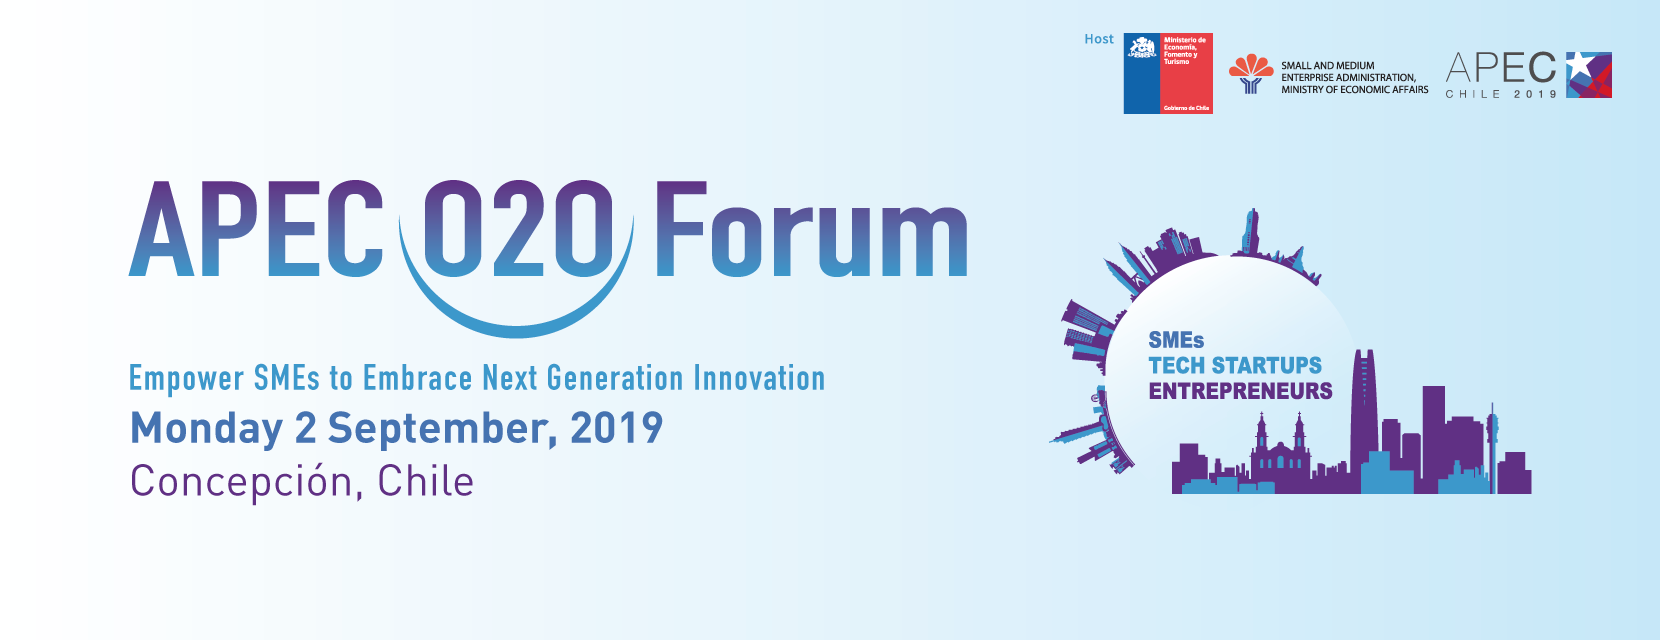 APEC O2O Forum - Chile